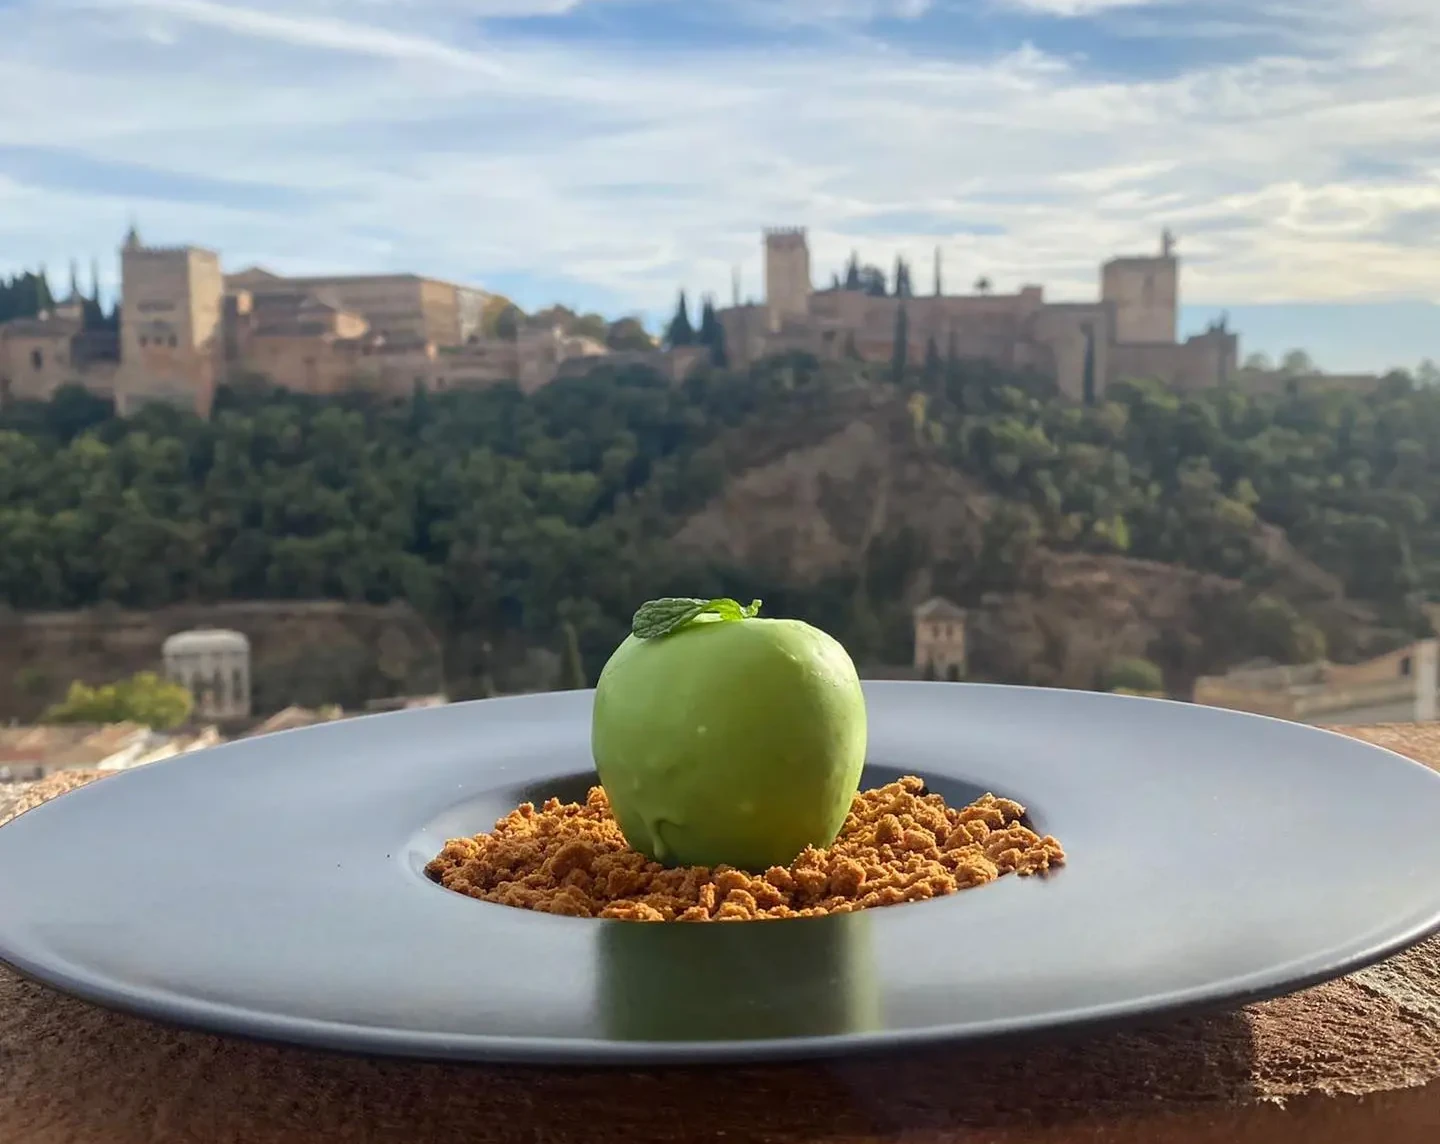 Restaurante con vistas a la Alhambra en el barrio del Albayzín, Granada. Cocina Fusión y de Mercado donde comer y vivir una experiencia gastronómica internacional en Andalucía con productos españoles